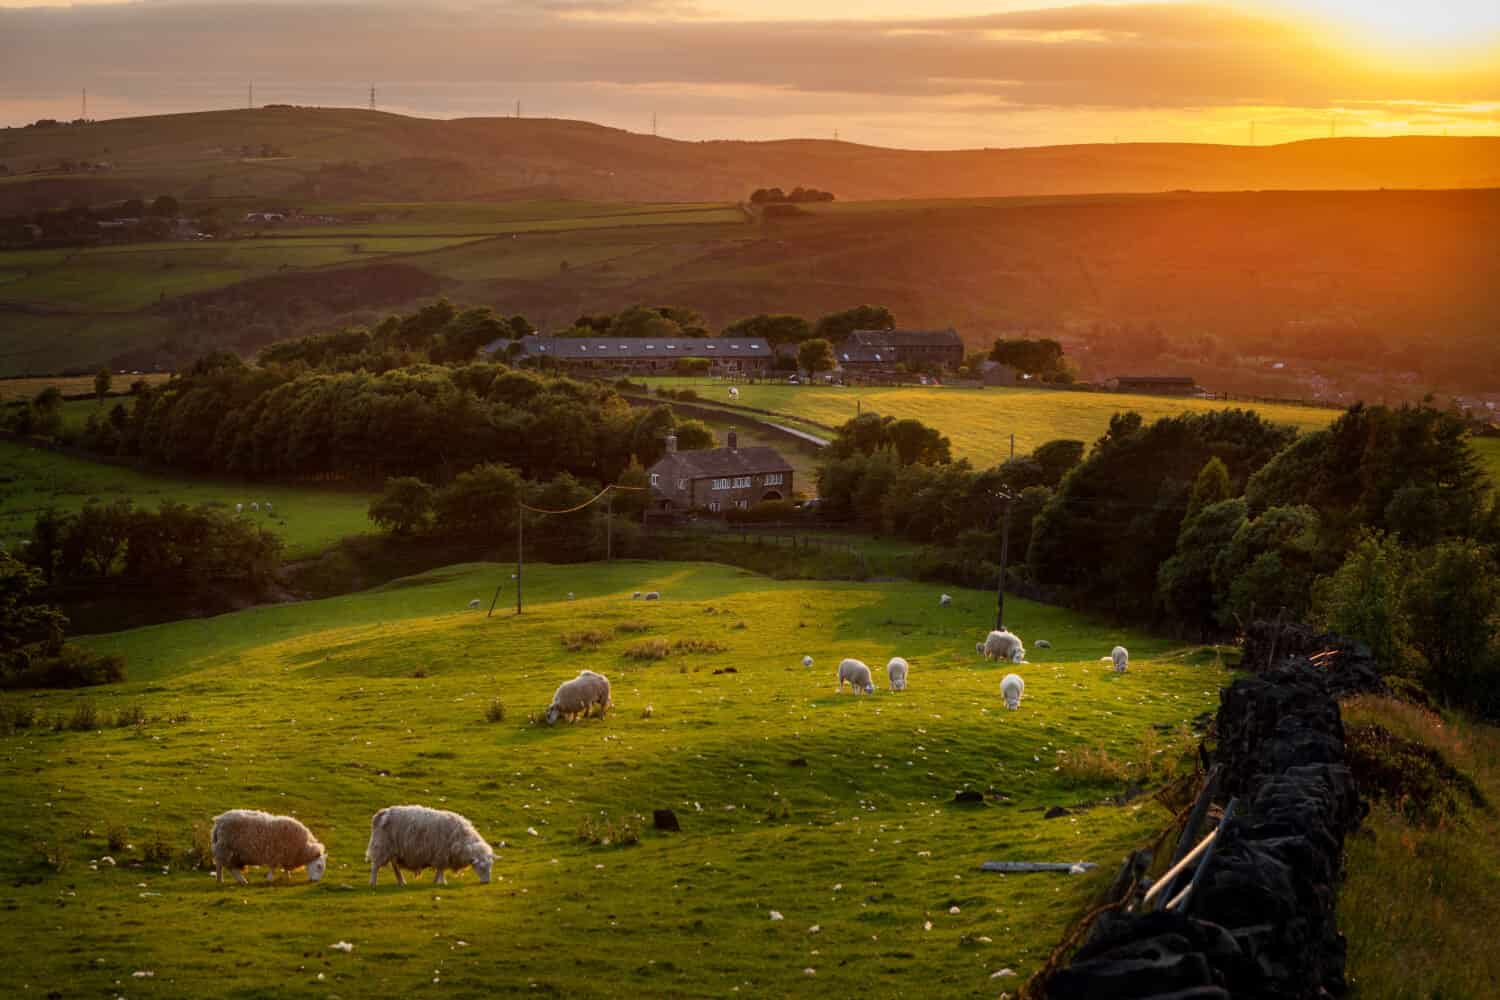 Pecore al pascolo in un bellissimo paesaggio nella campagna britannica vicino alla periferia di Manchester.